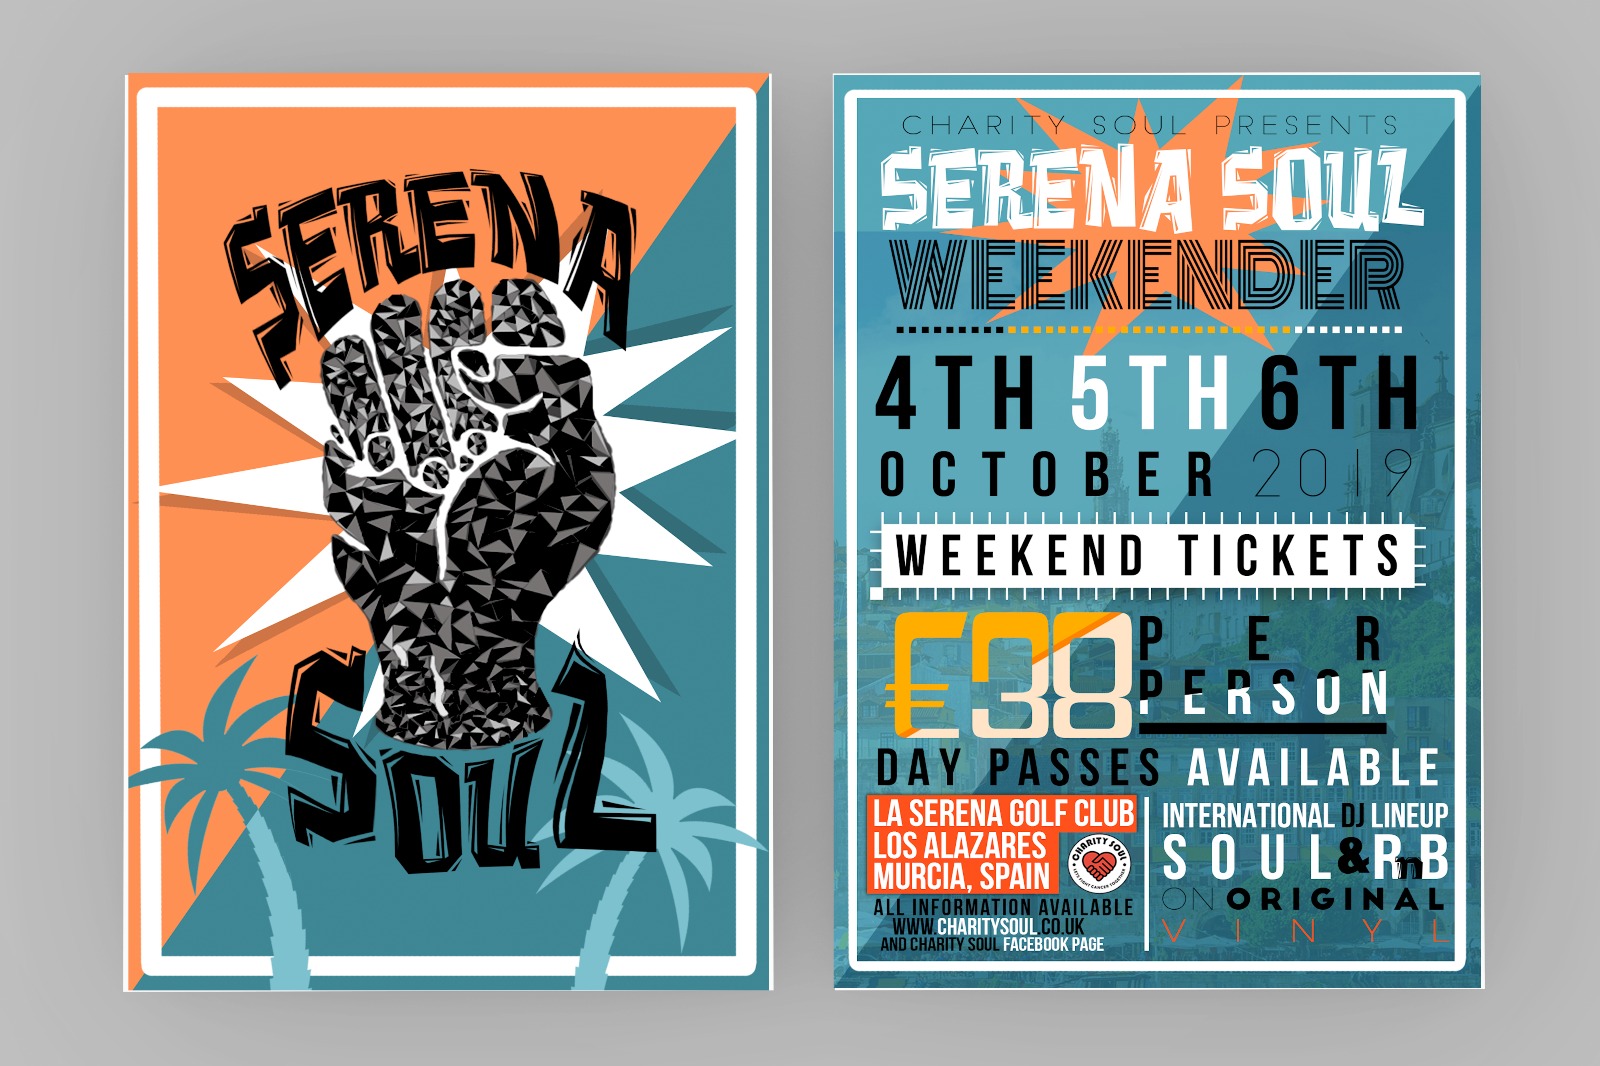 Serena Soul Weekender – Charity Soul